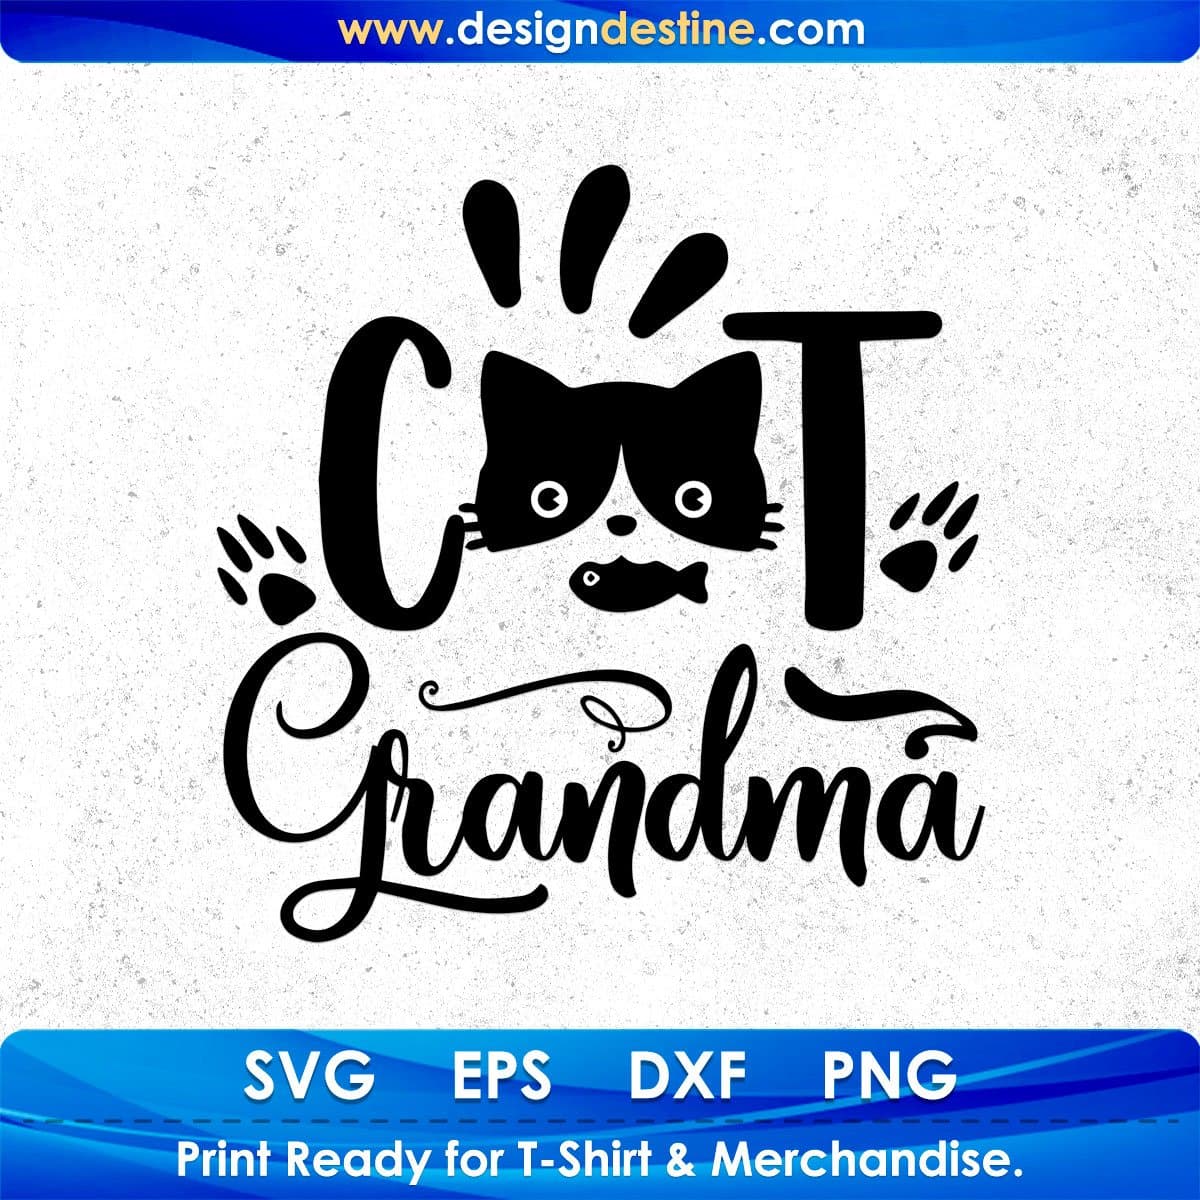 Cat Grandma T shirt Design In Svg Png Cutting Printable Files